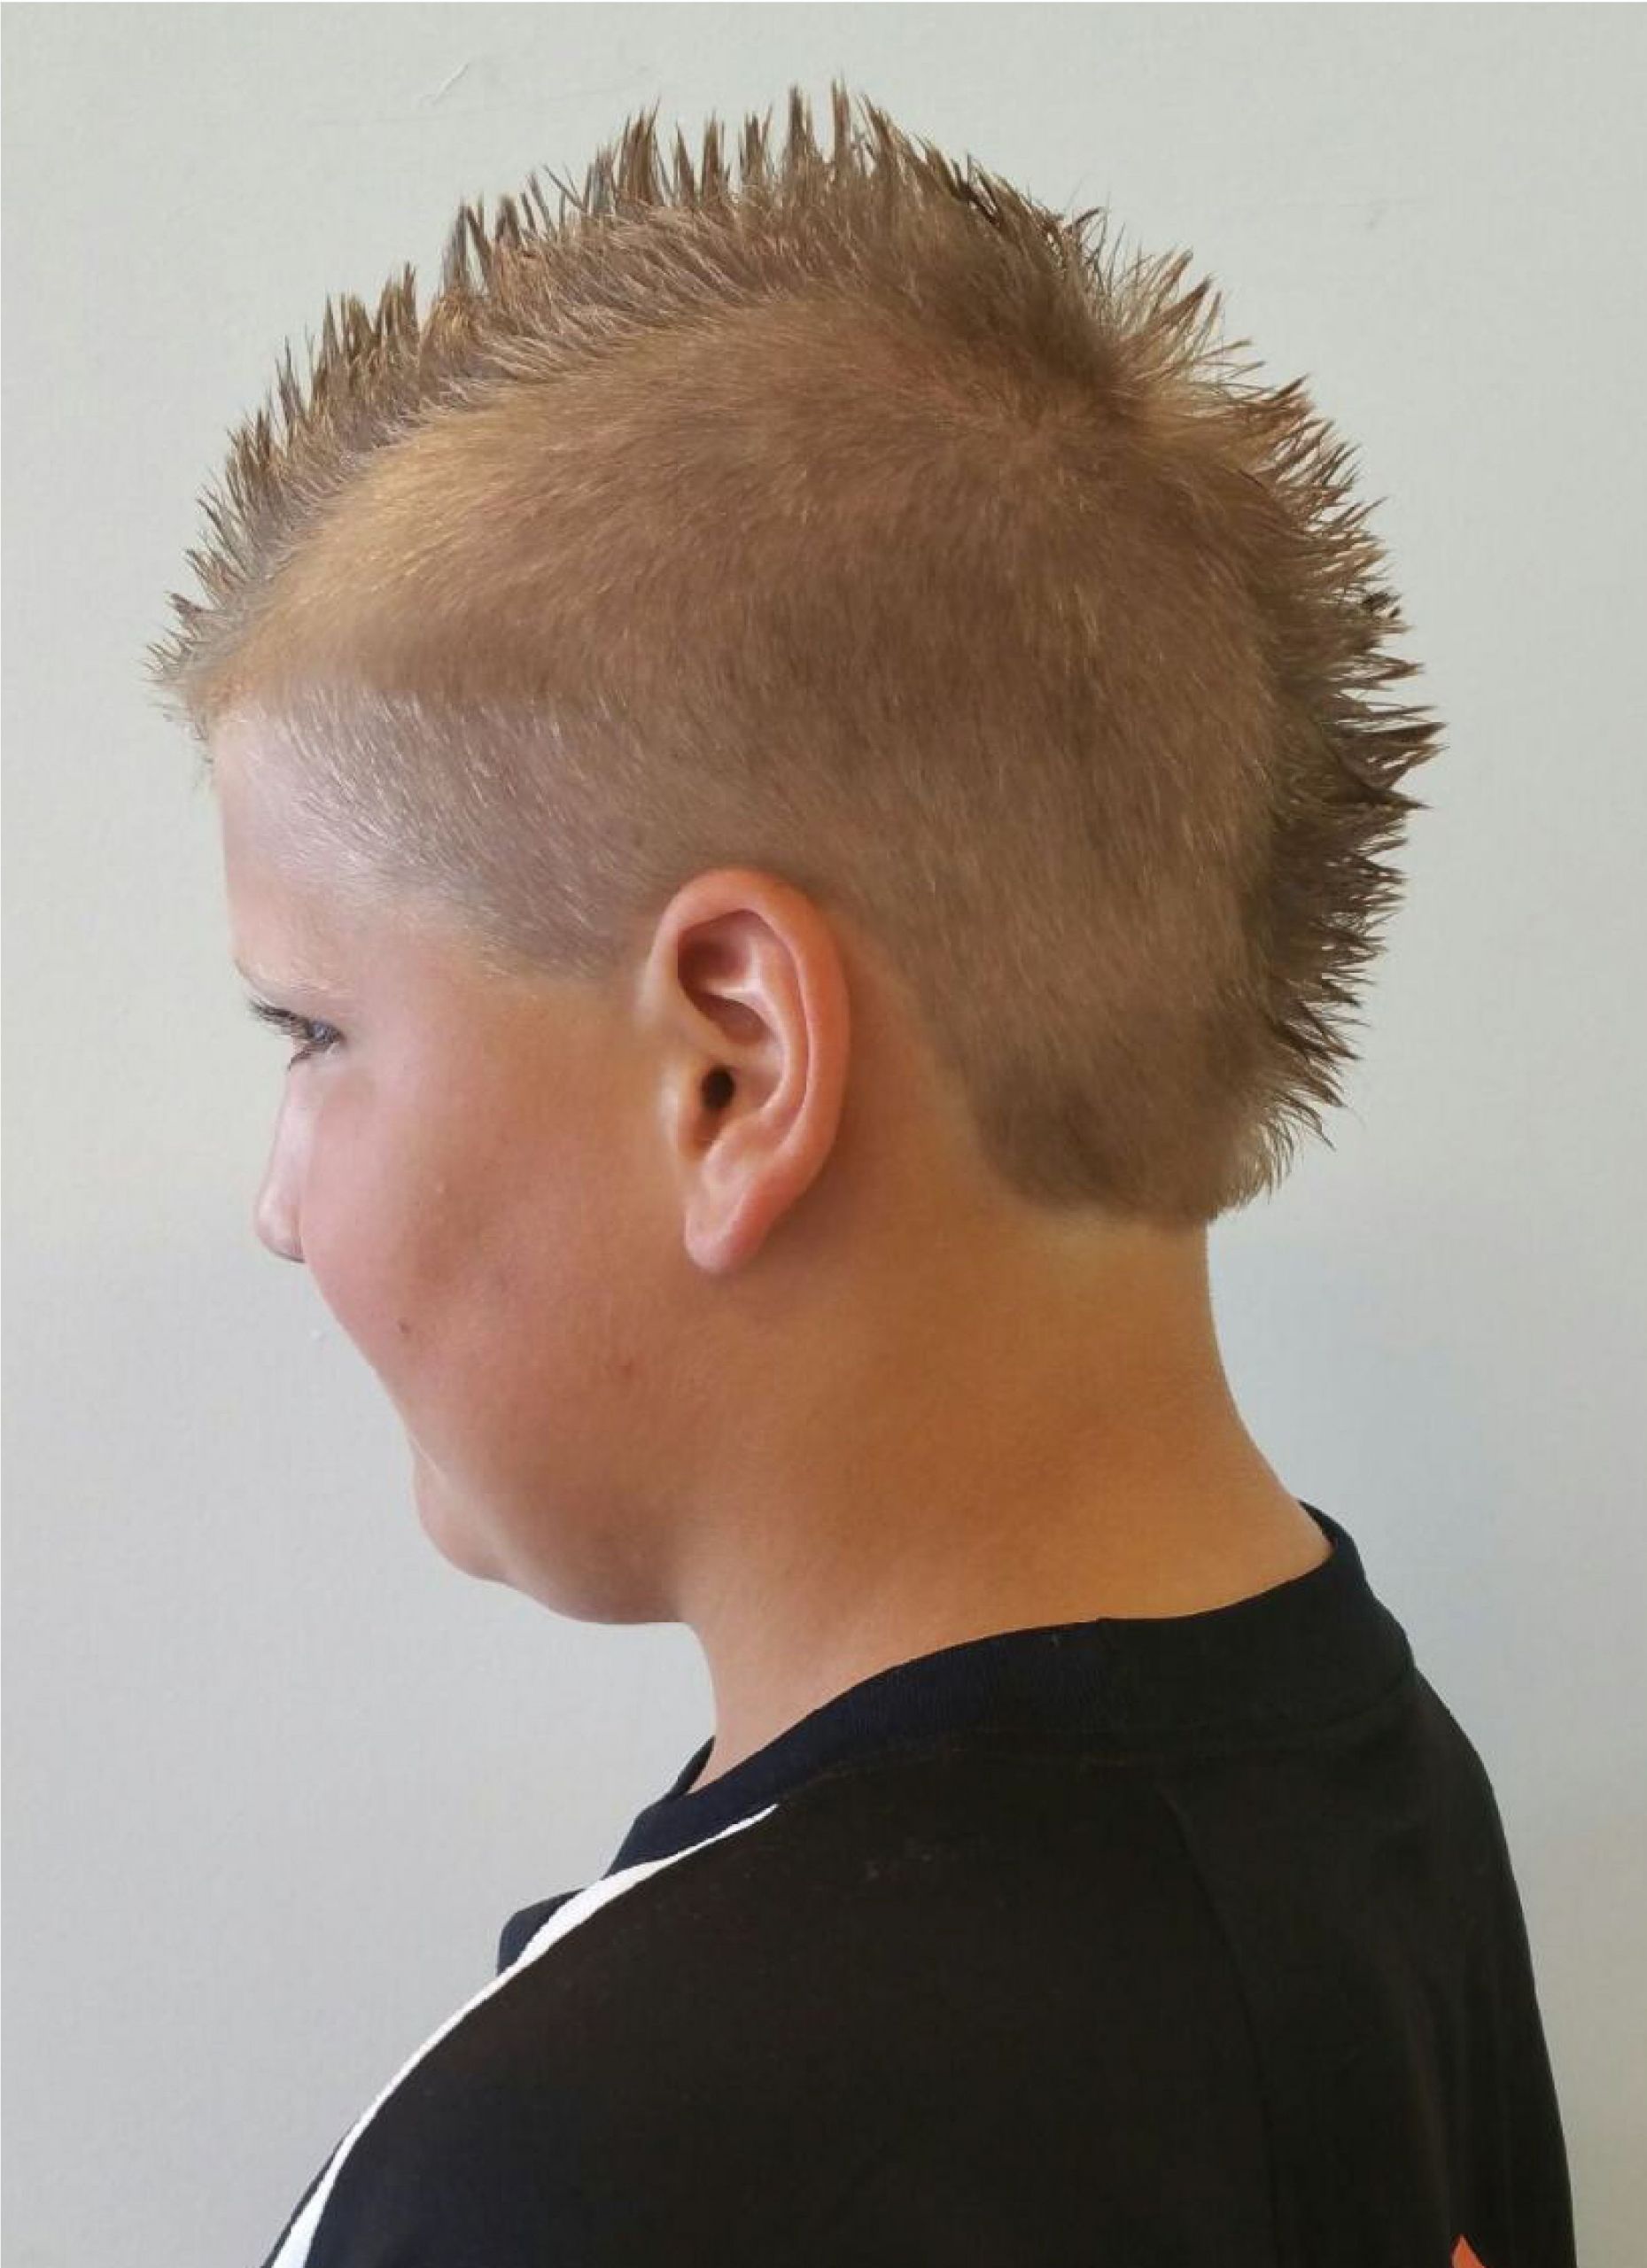 Kids Haircuts Dallas
 Spiky Mohawk DANA Dallas KID S HAIR CUTS STYLES Lami u